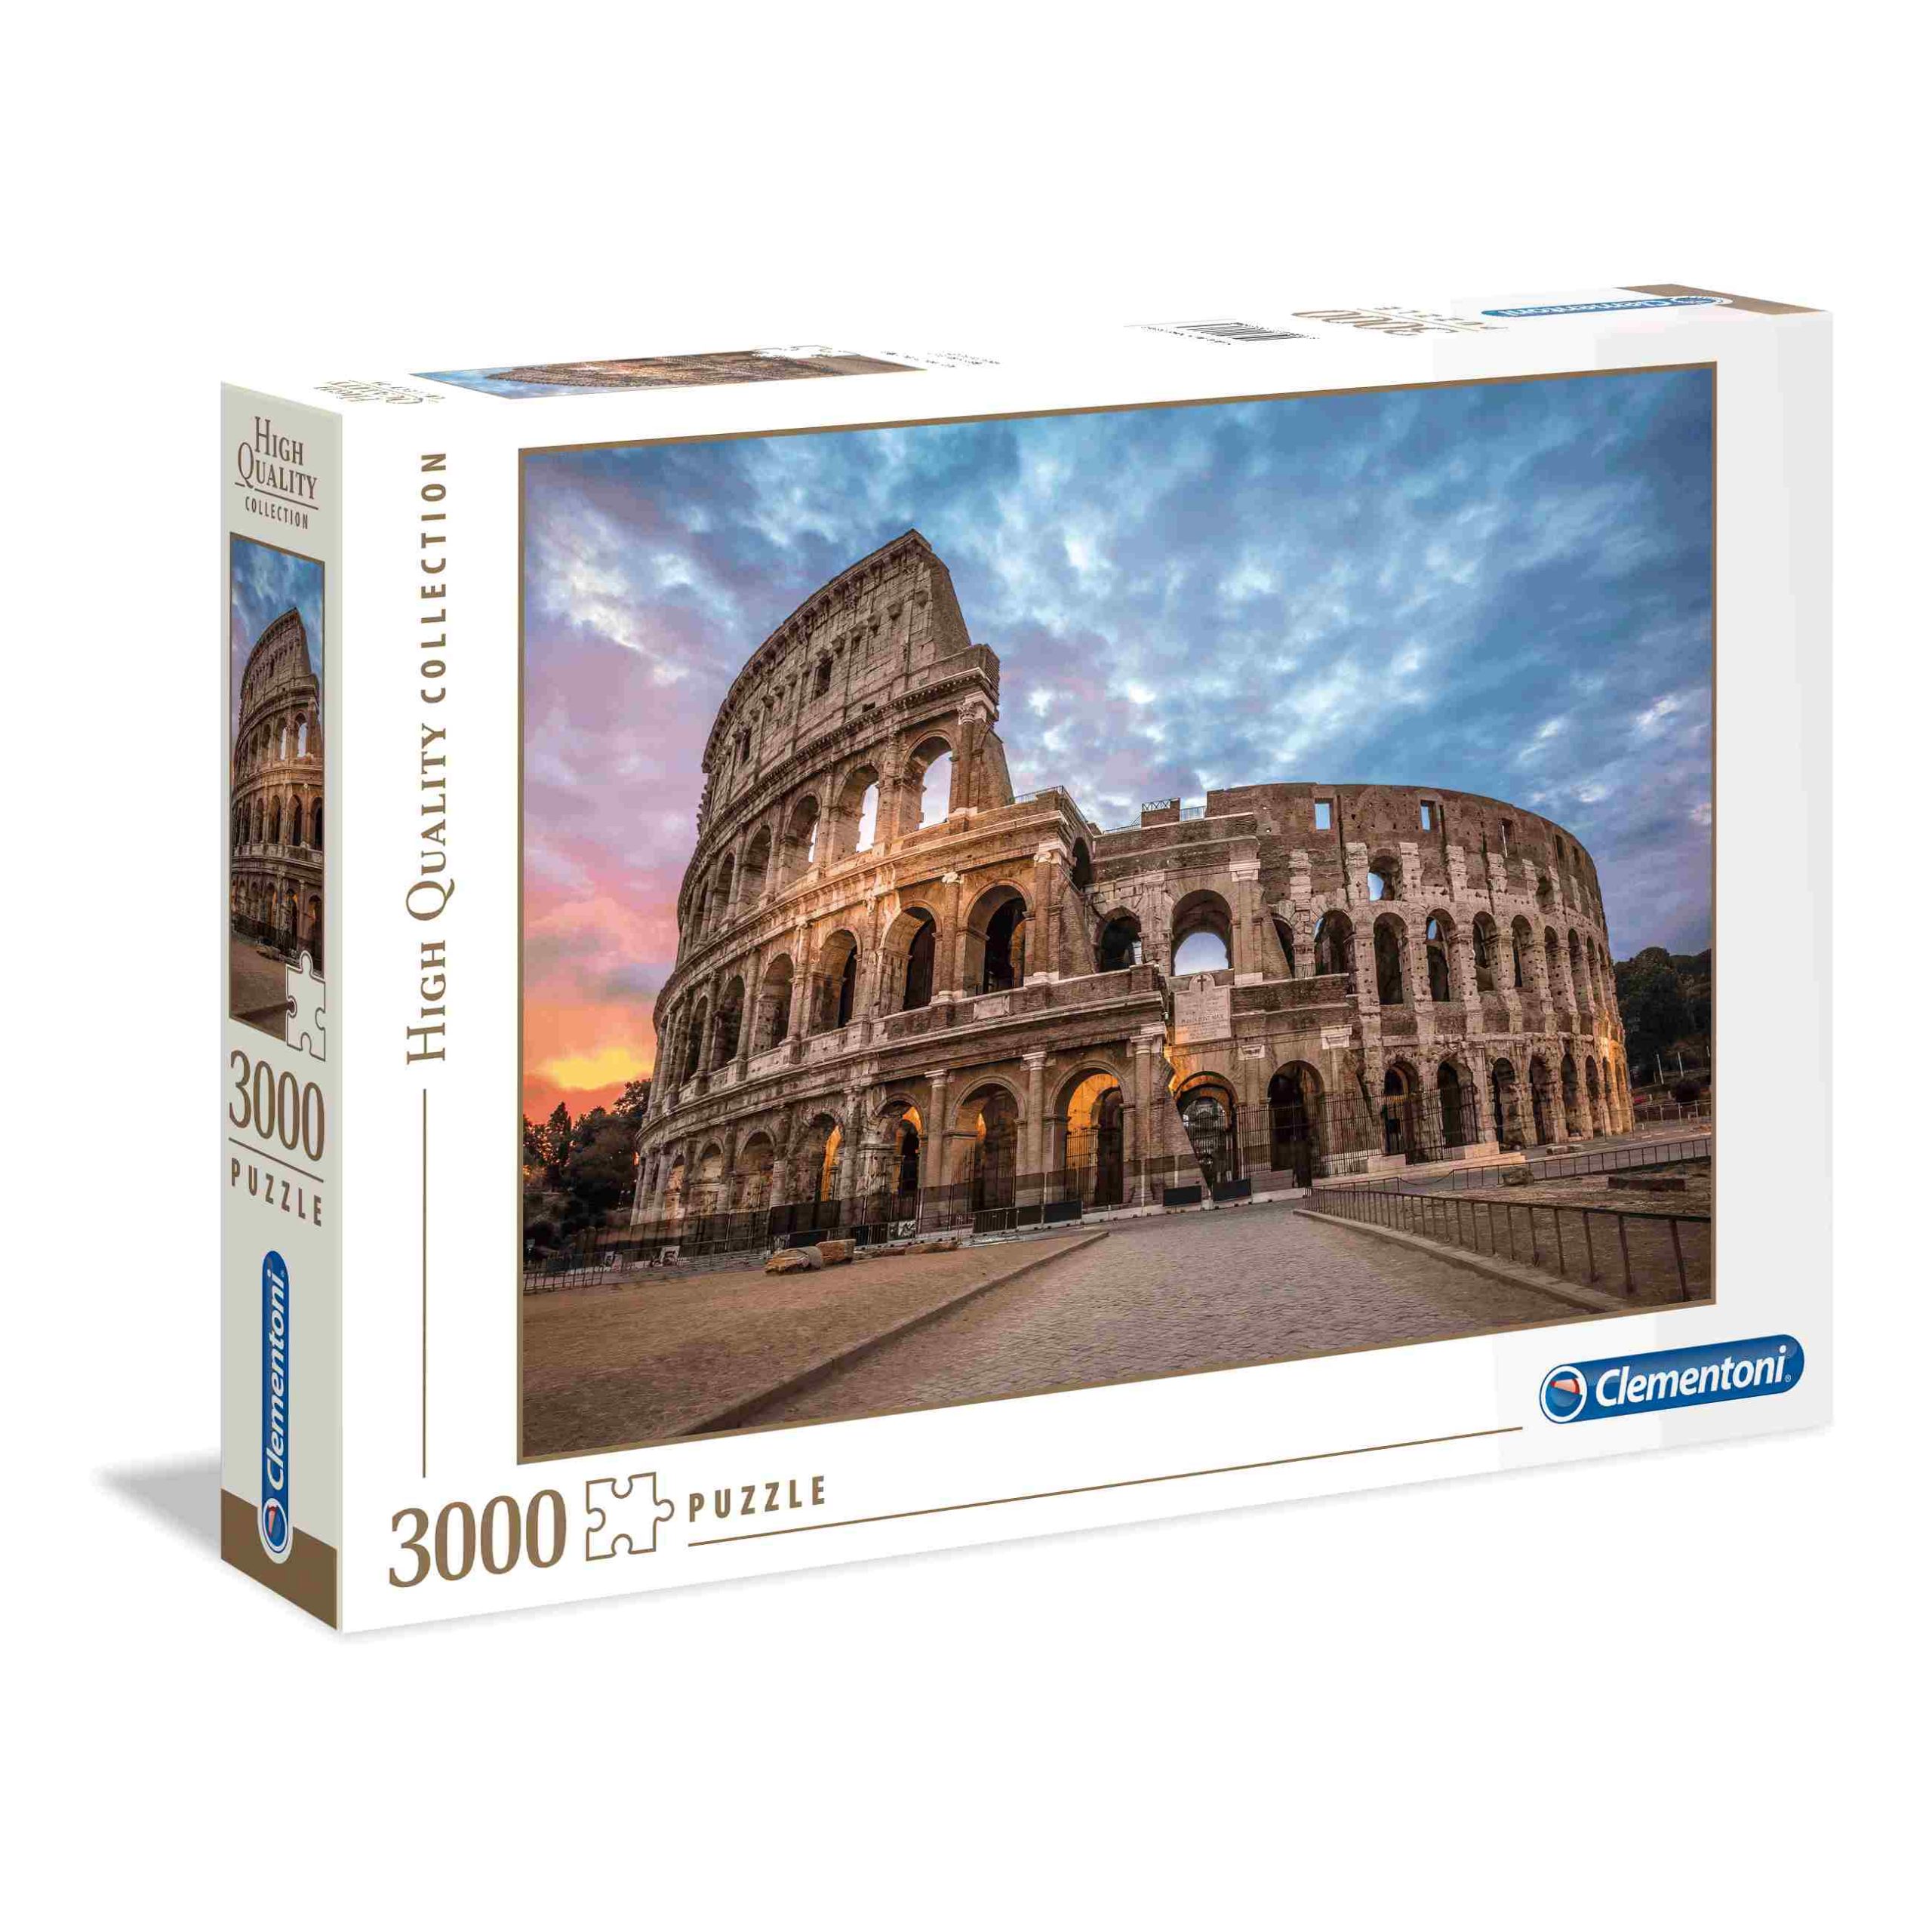 Clementoni puzzle coliseum sunrise - 3000 pezzi - CLEMENTONI